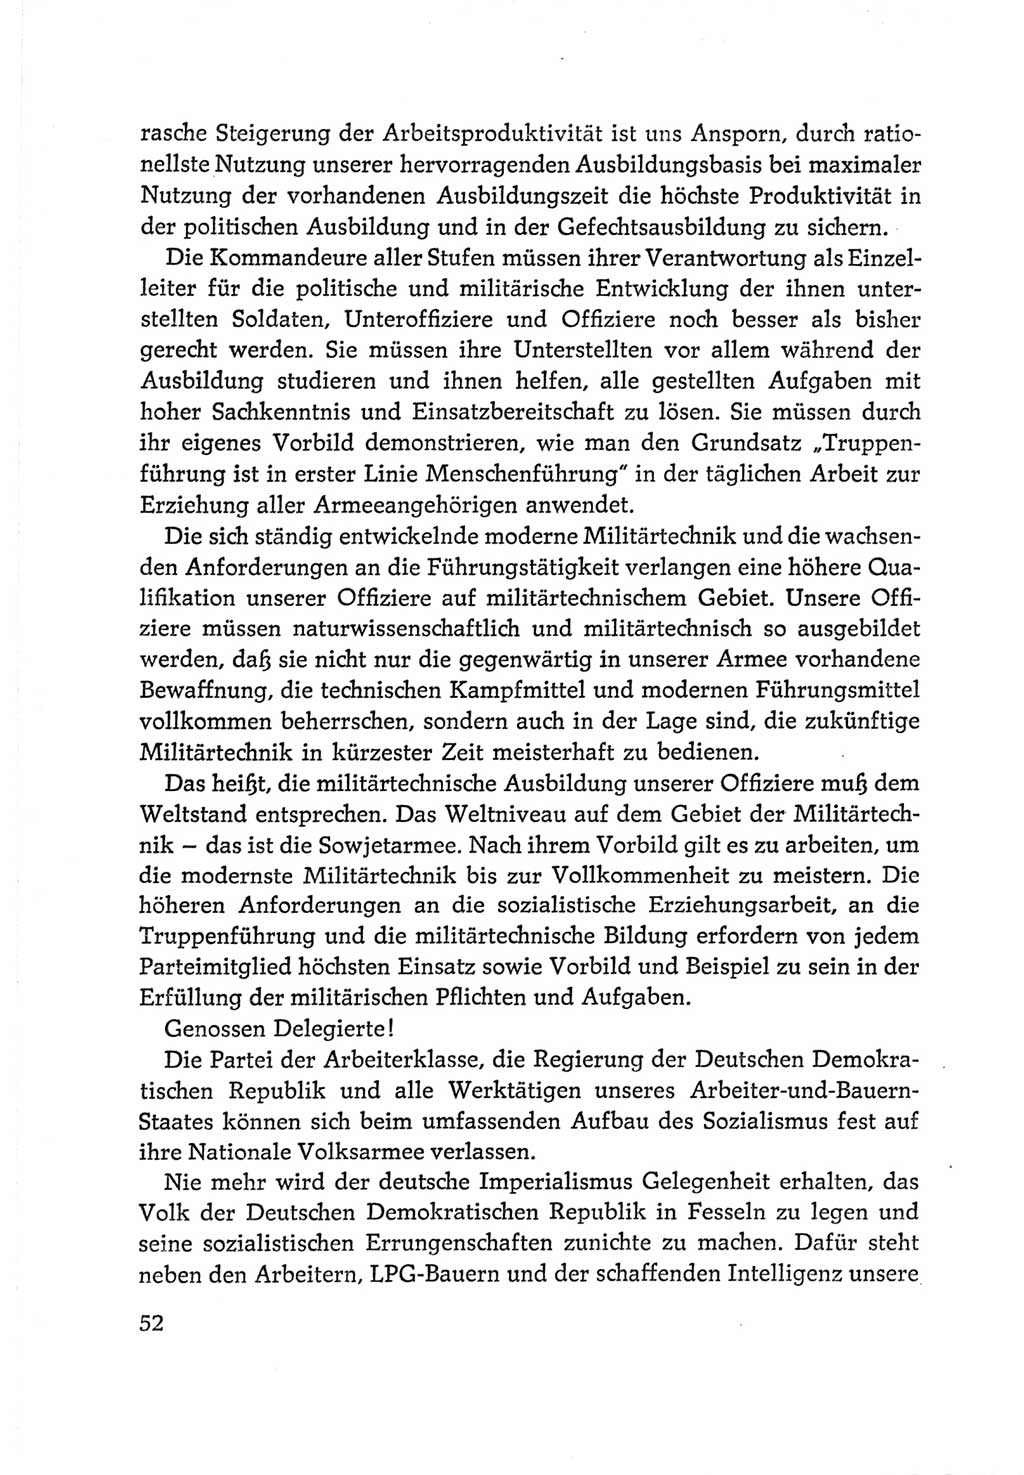 Protokoll der Verhandlungen des Ⅵ. Parteitages der Sozialistischen Einheitspartei Deutschlands (SED) [Deutsche Demokratische Republik (DDR)] 1963, Band Ⅱ, Seite 52 (Prot. Verh. Ⅵ. PT SED DDR 1963, Bd. Ⅱ, S. 52)